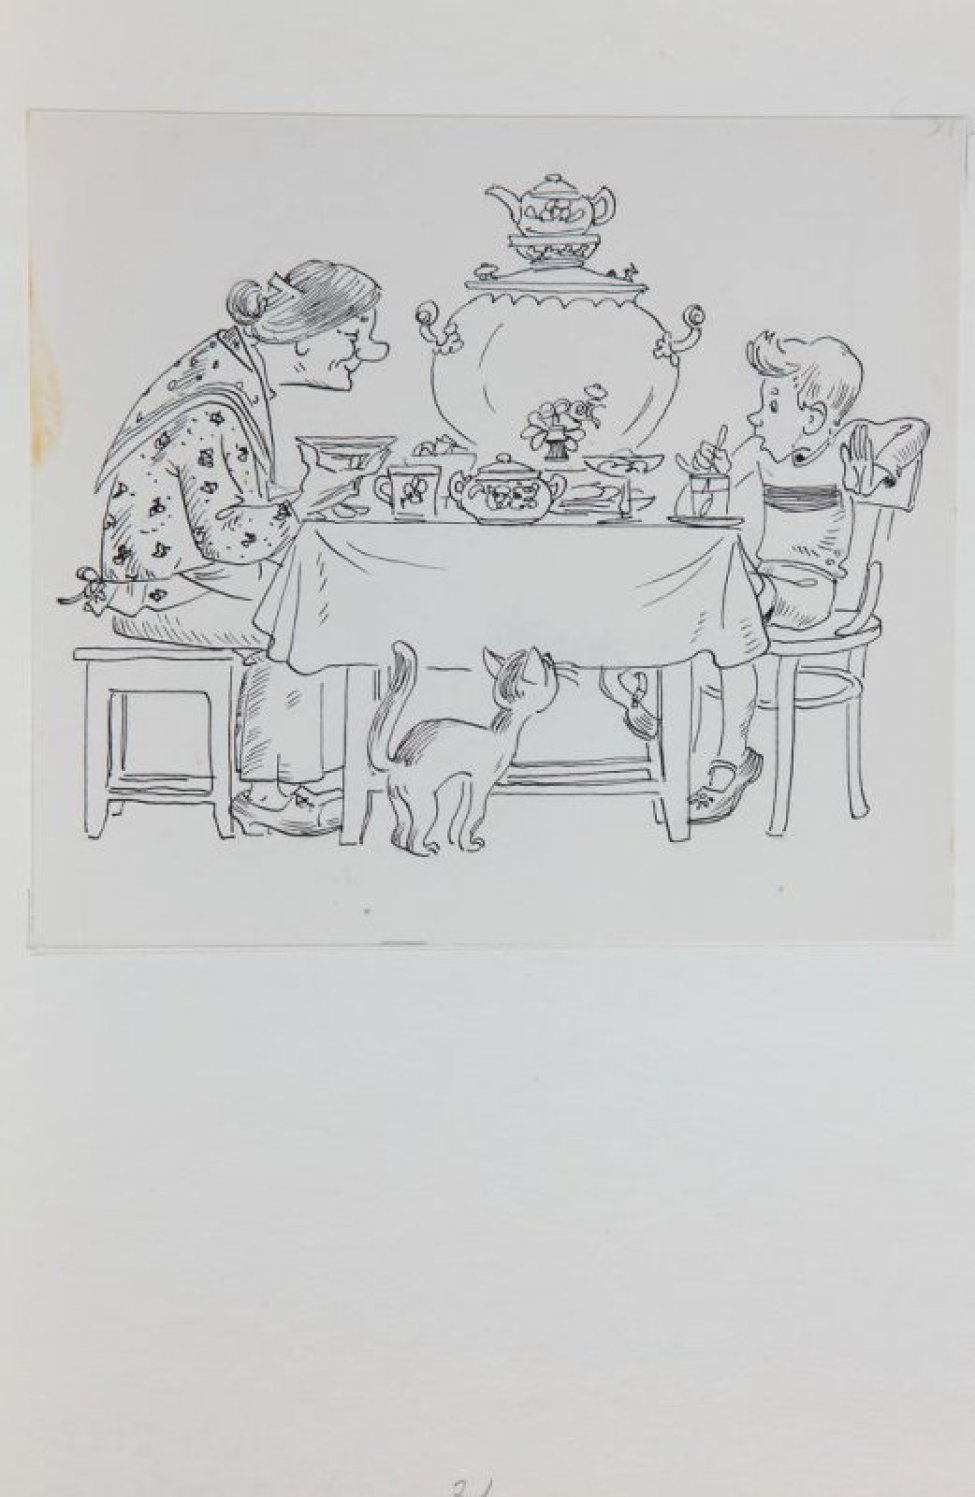 Дано стилизованное изображение старушки и мальчика, сидящих за накрытым чайным столом с самоваром, возле стола - кошка.